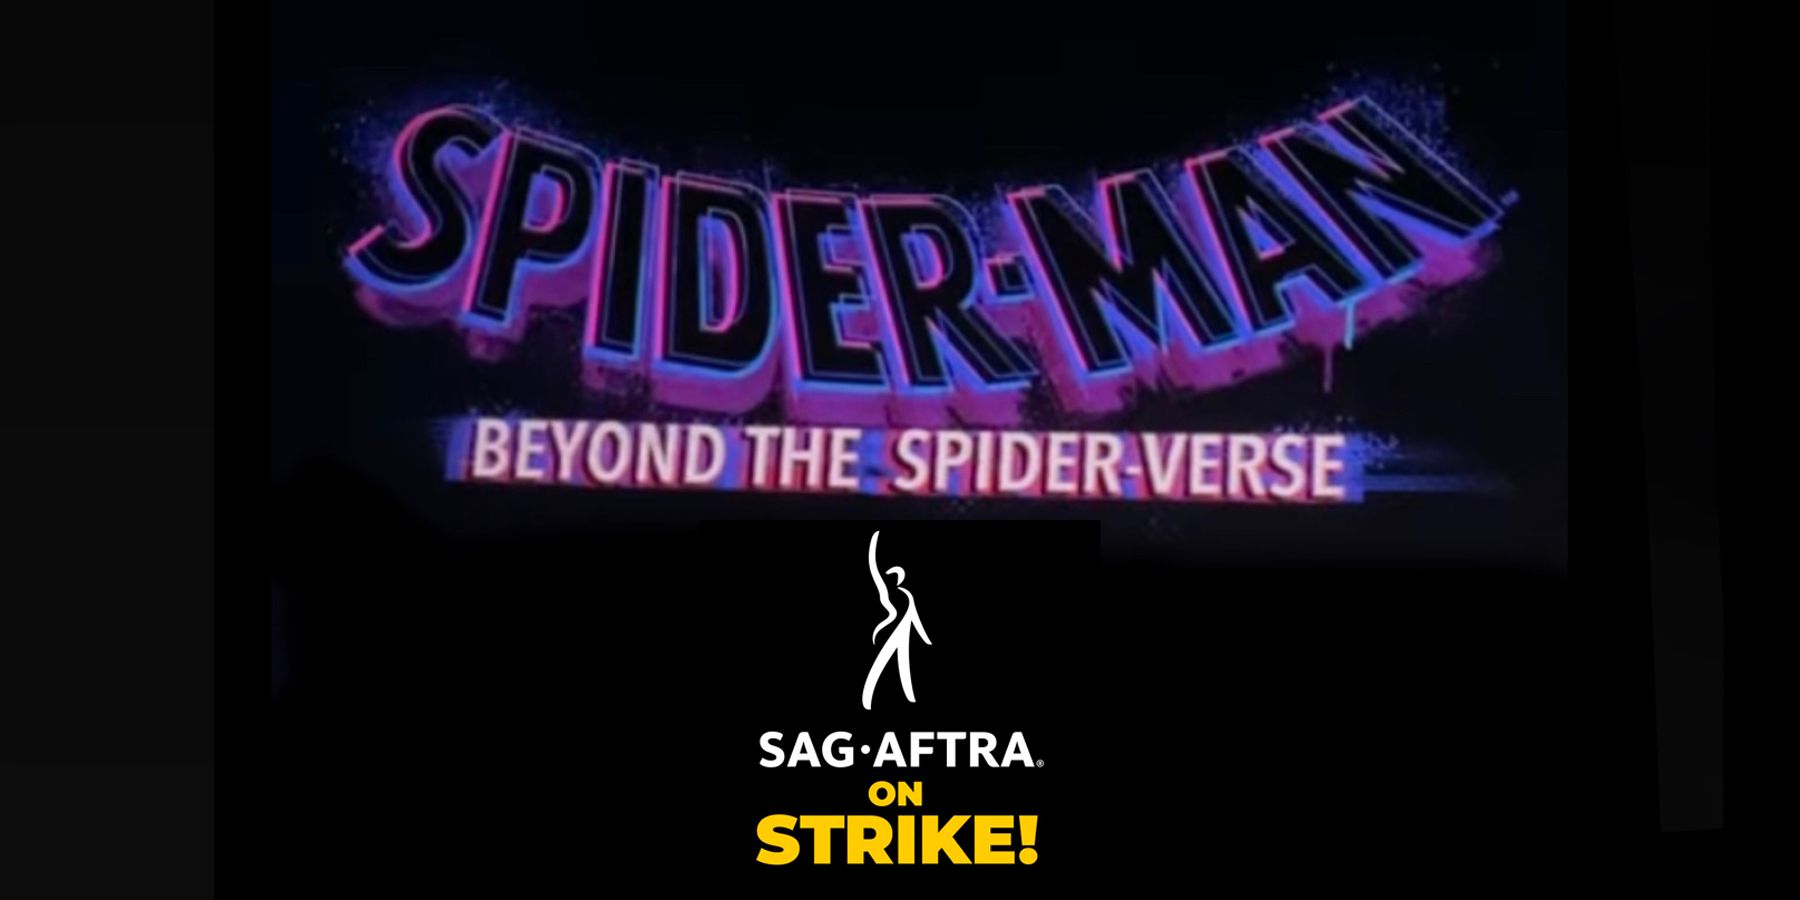 Beyond the spider verse дата. Spider man Beyond the Spider Verse.